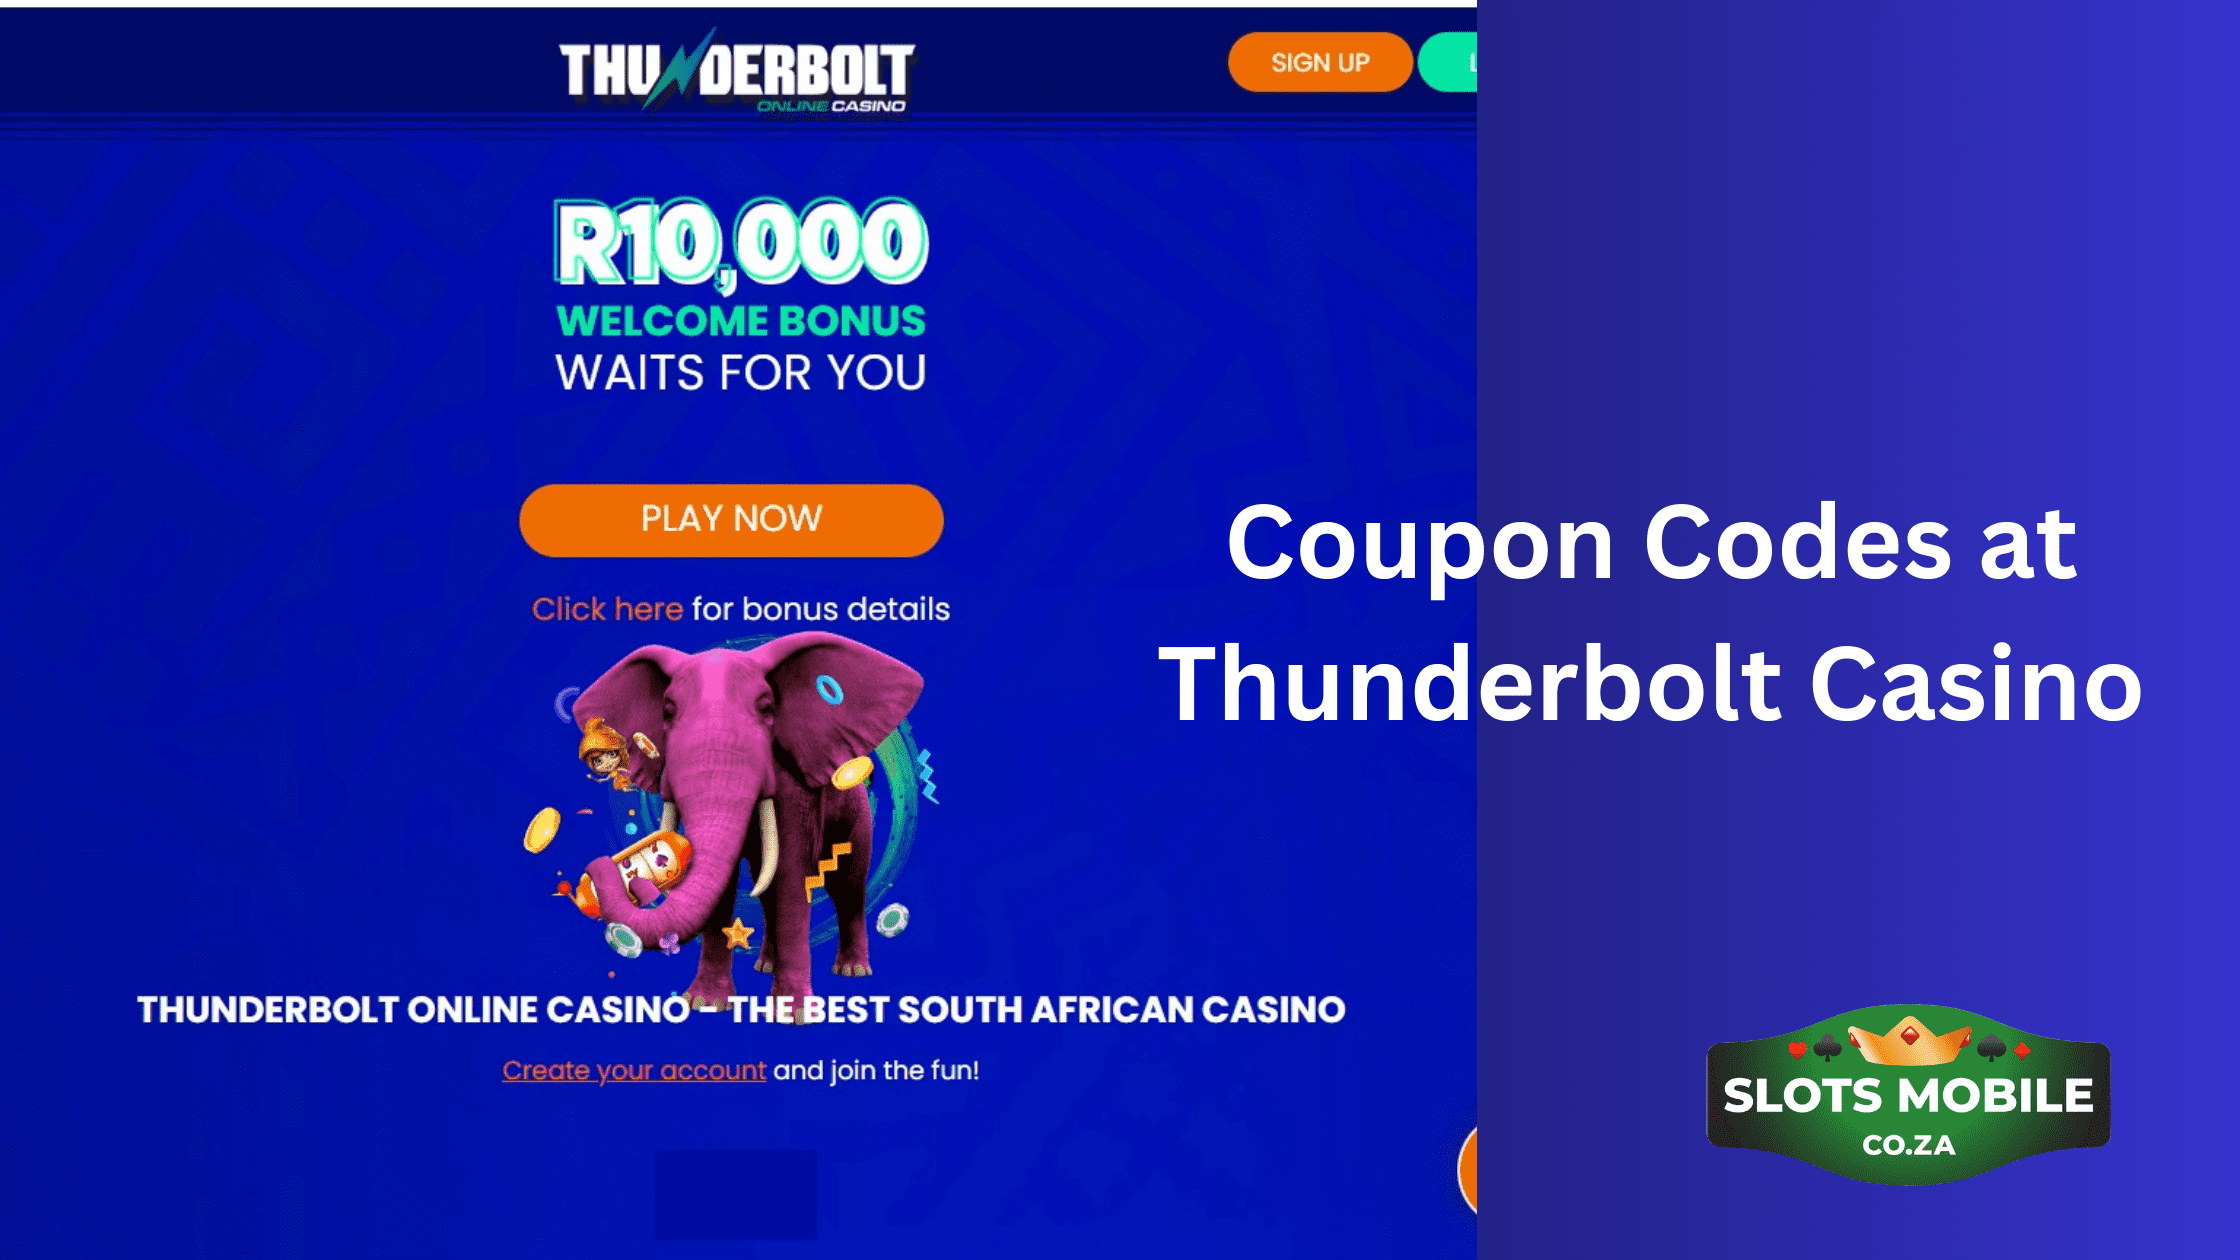 Coupon Codes at Thunderbolt Casino